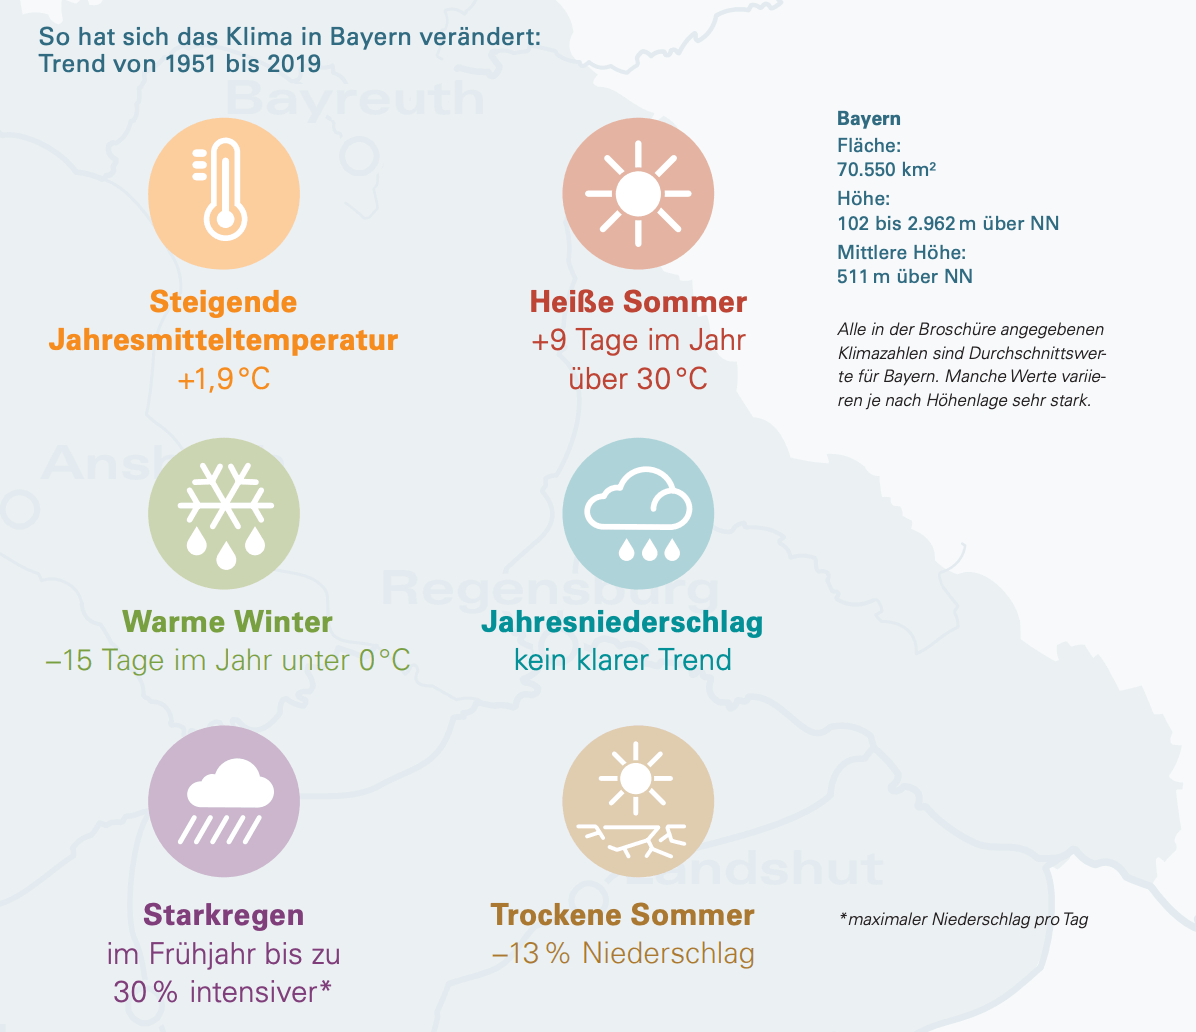 Schaubild mit den Folgen des Klimawandels in Bayern